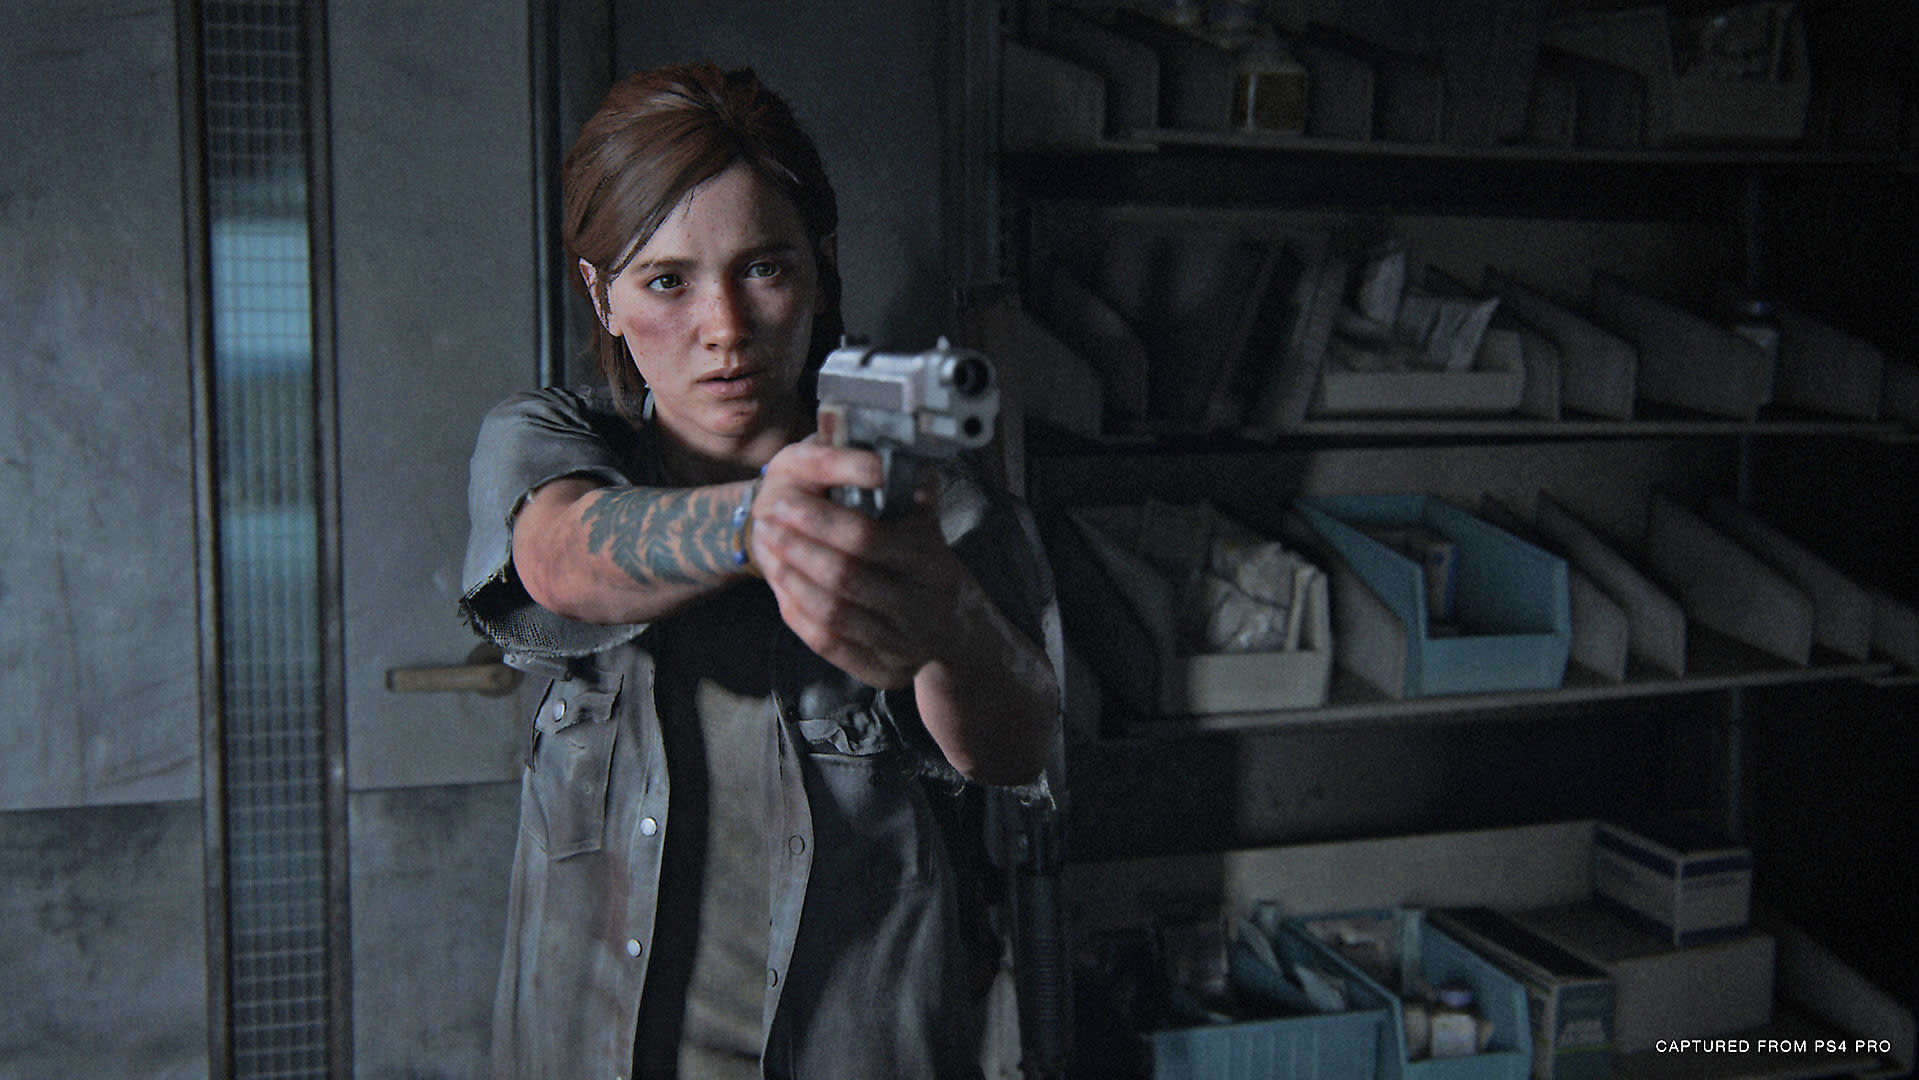 The Last of Us Part II' is as brutal as it is daring